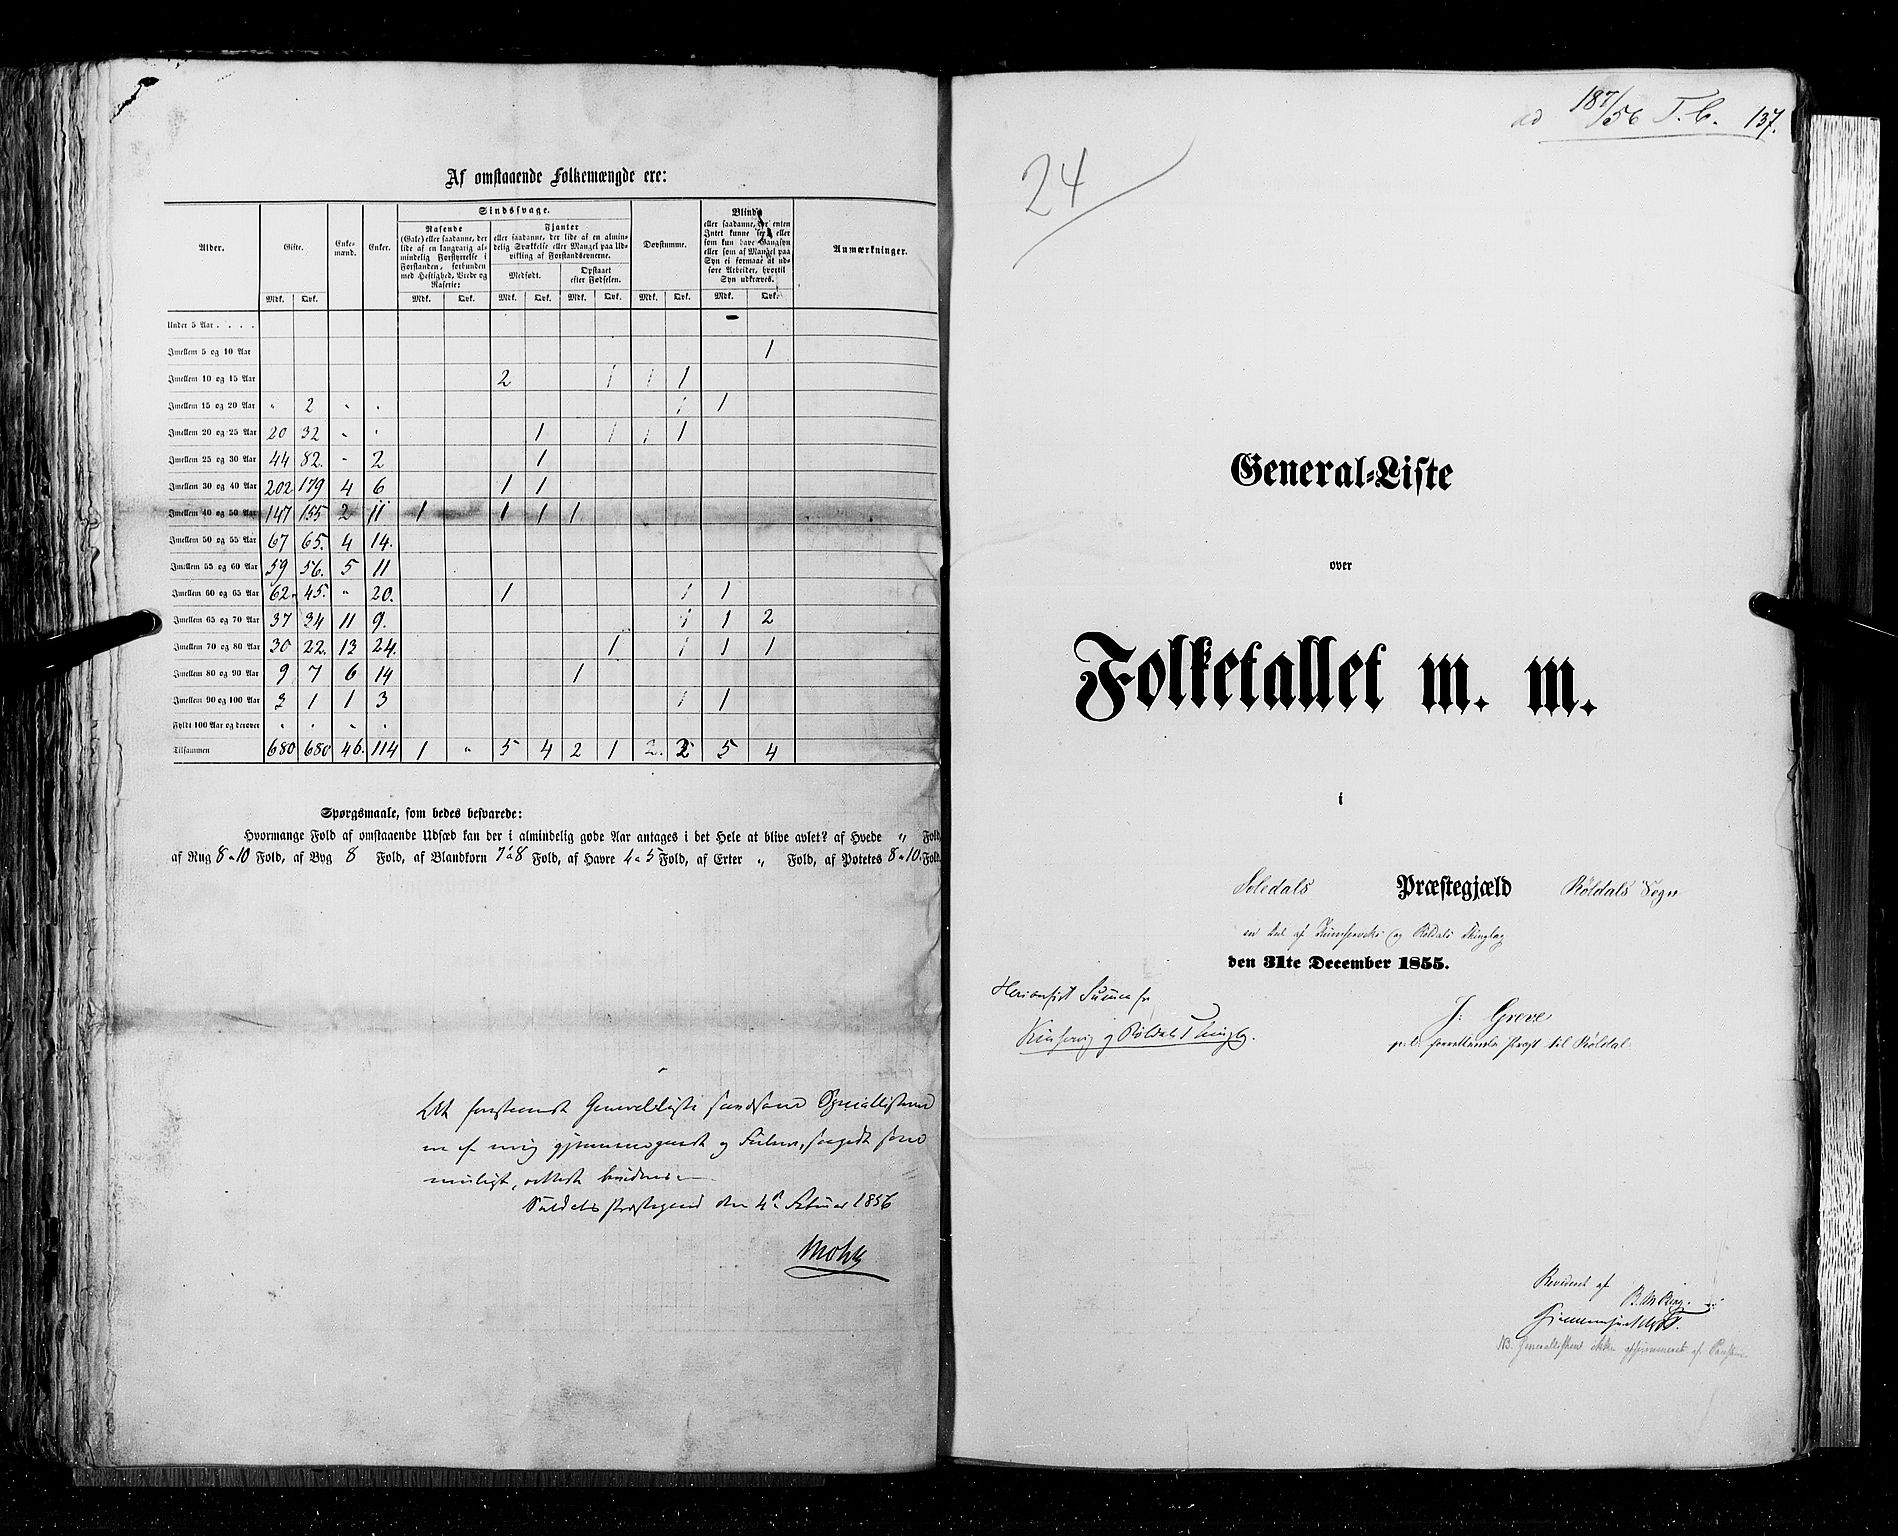 RA, Folketellingen 1855, bind 4: Stavanger amt og Søndre Bergenhus amt, 1855, s. 137